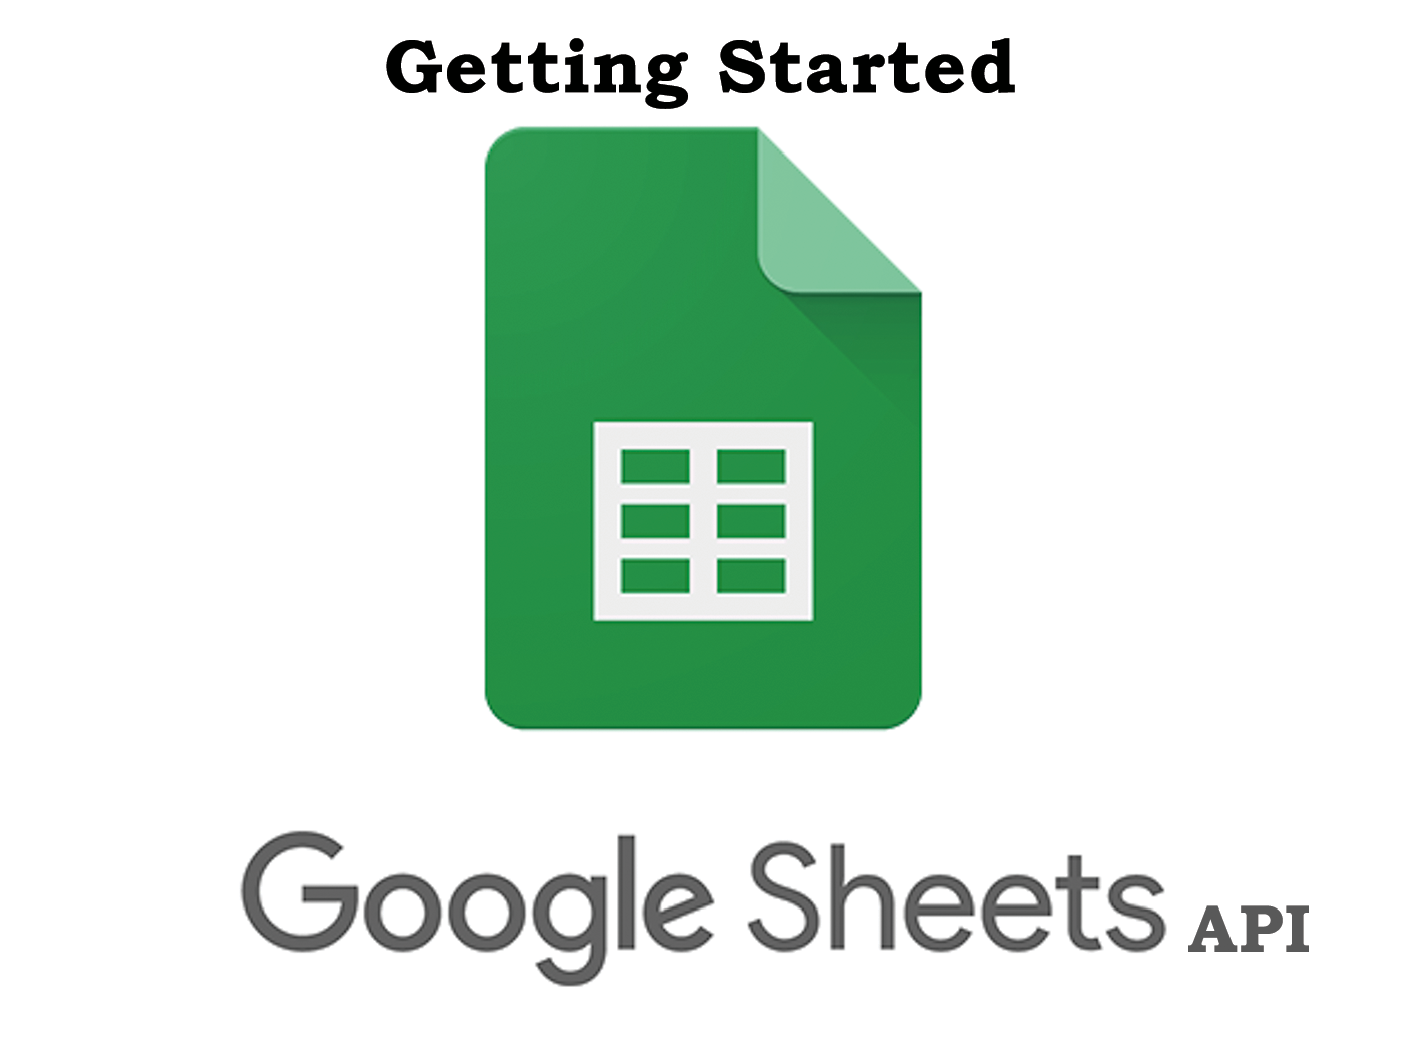 Google Sheet API - get started